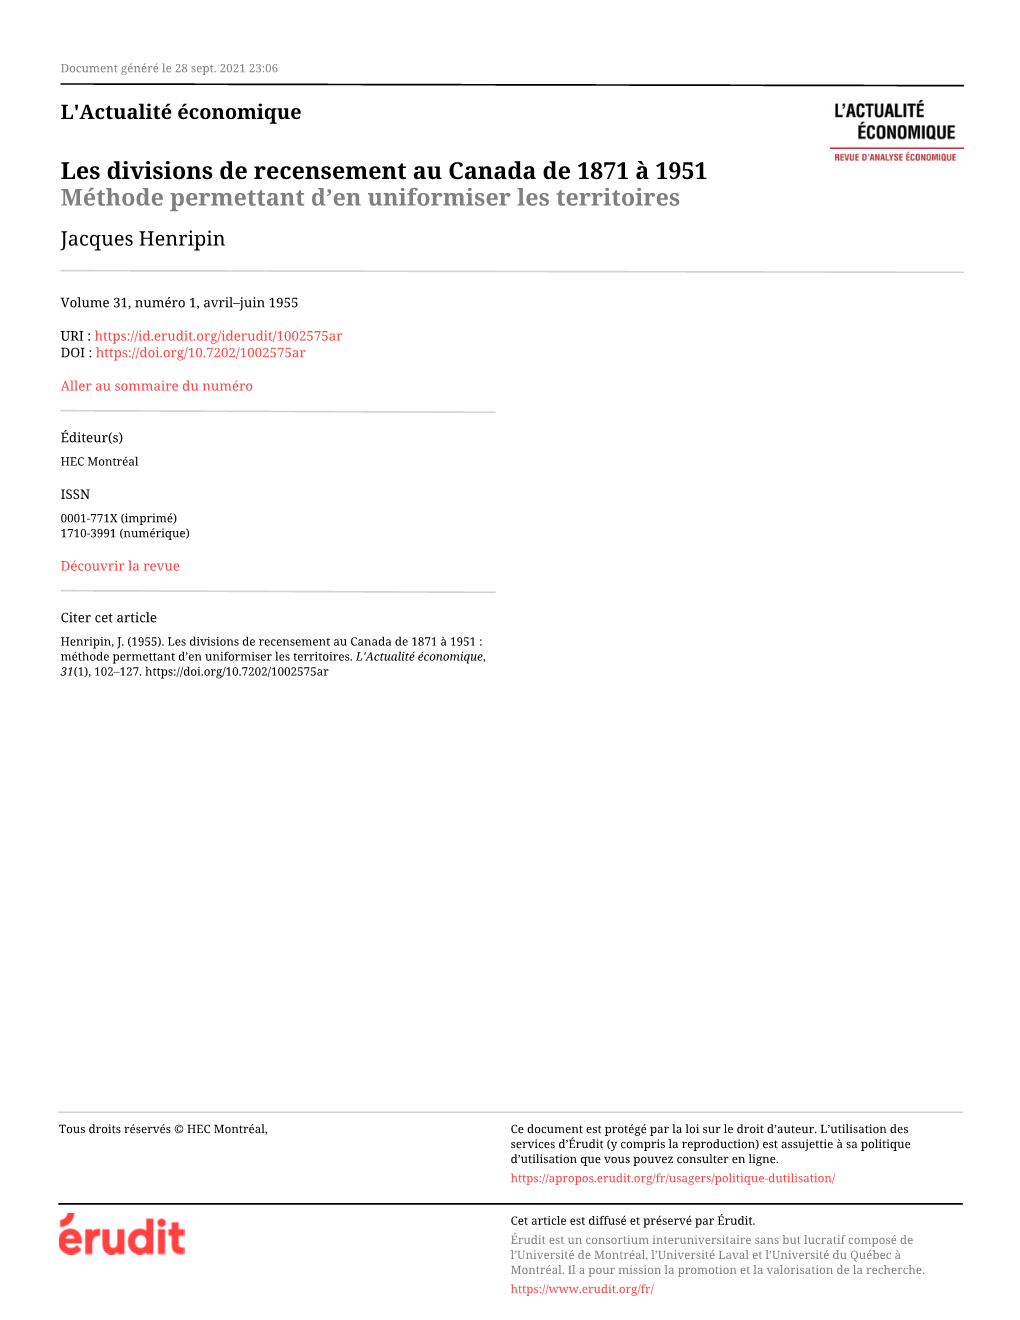 Les Divisions De Recensement Au Canada De 1871 À 1951 Méthode Permettant D’En Uniformiser Les Territoires Jacques Henripin